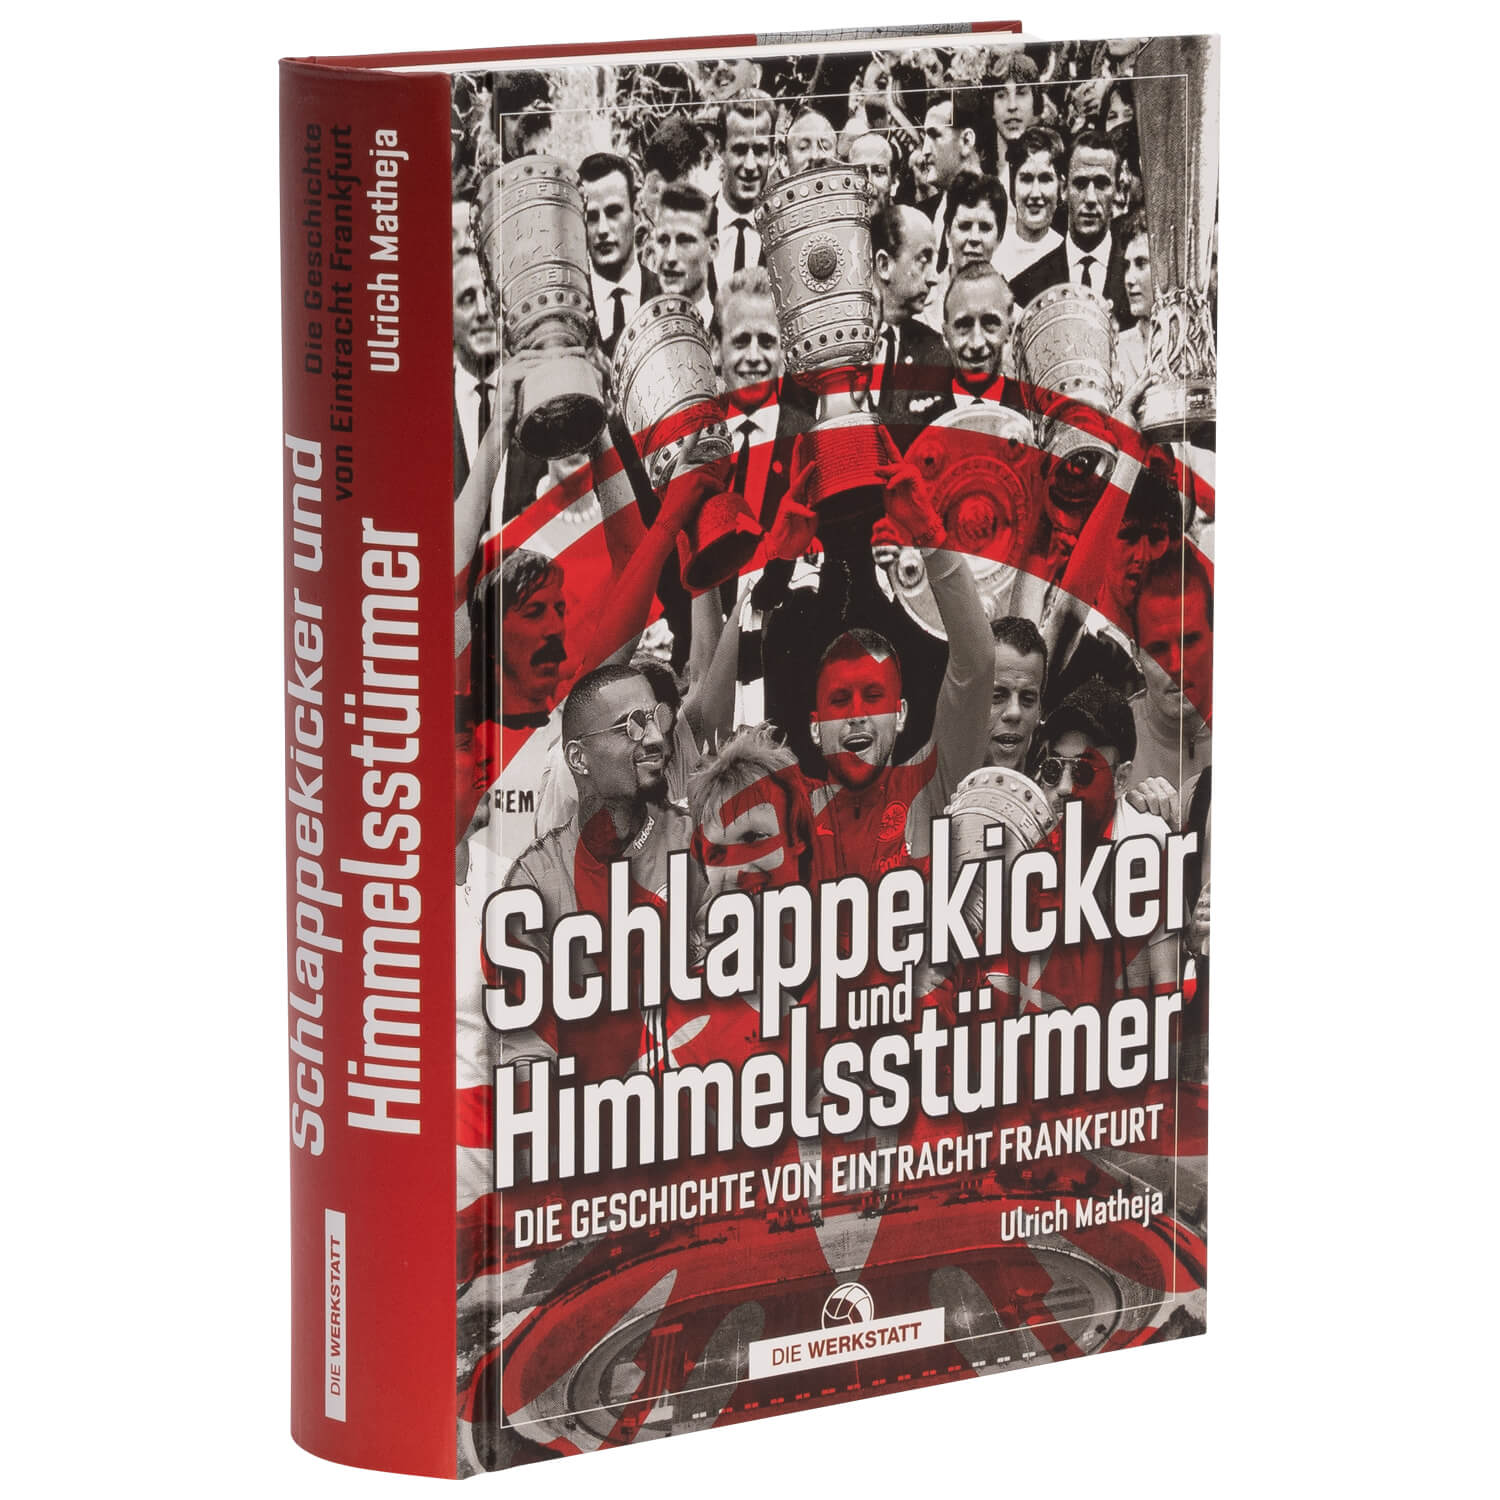 Bild 2: Schlappekicker & Himmelsstürmer, Buch Neuauflage Oktober 2020 von Ulrich Matheja